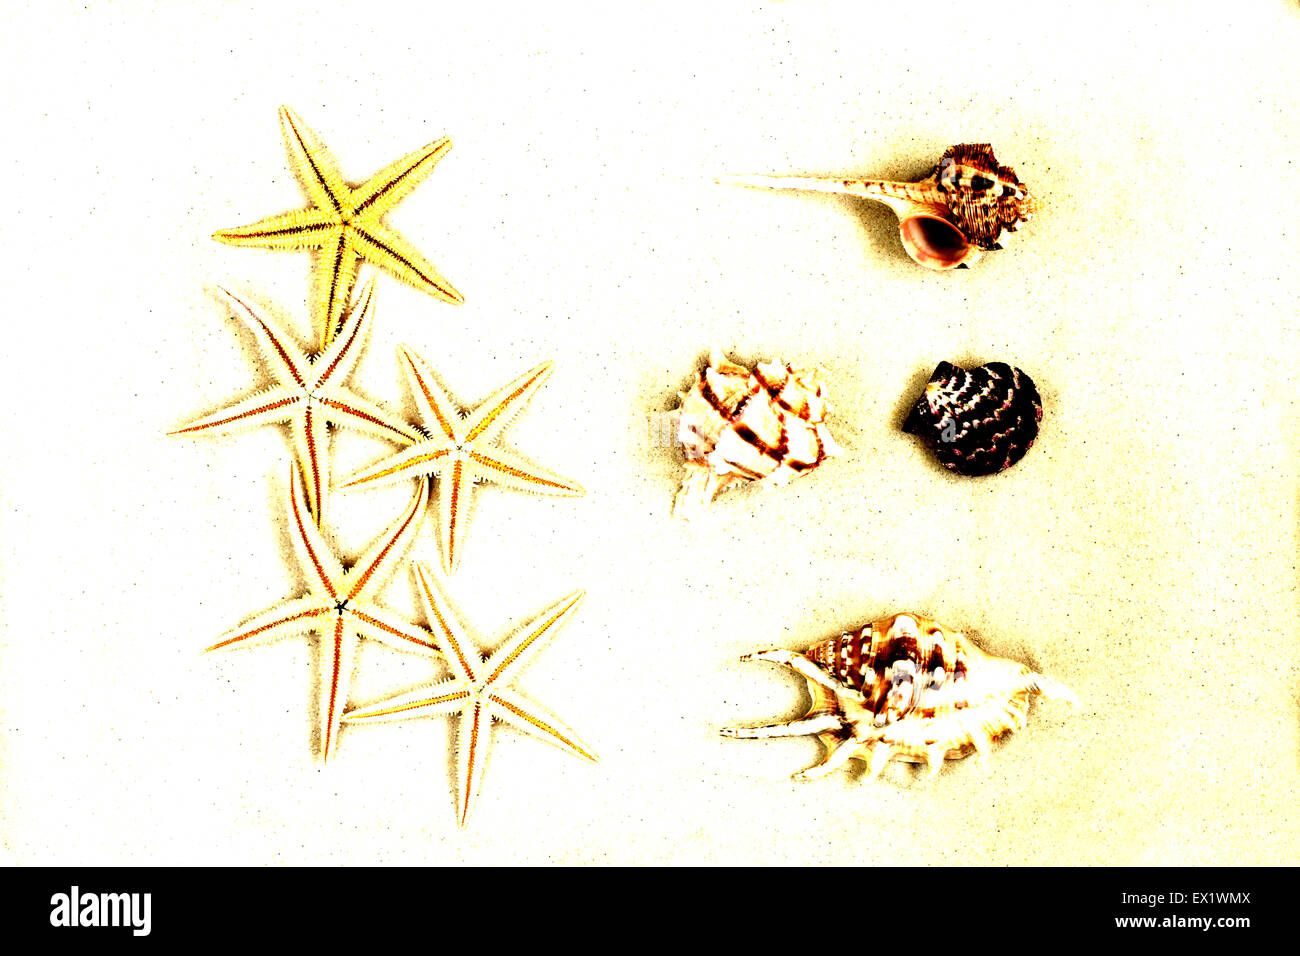 Des coquillages et des étoiles de mer sur le sable Banque D'Images